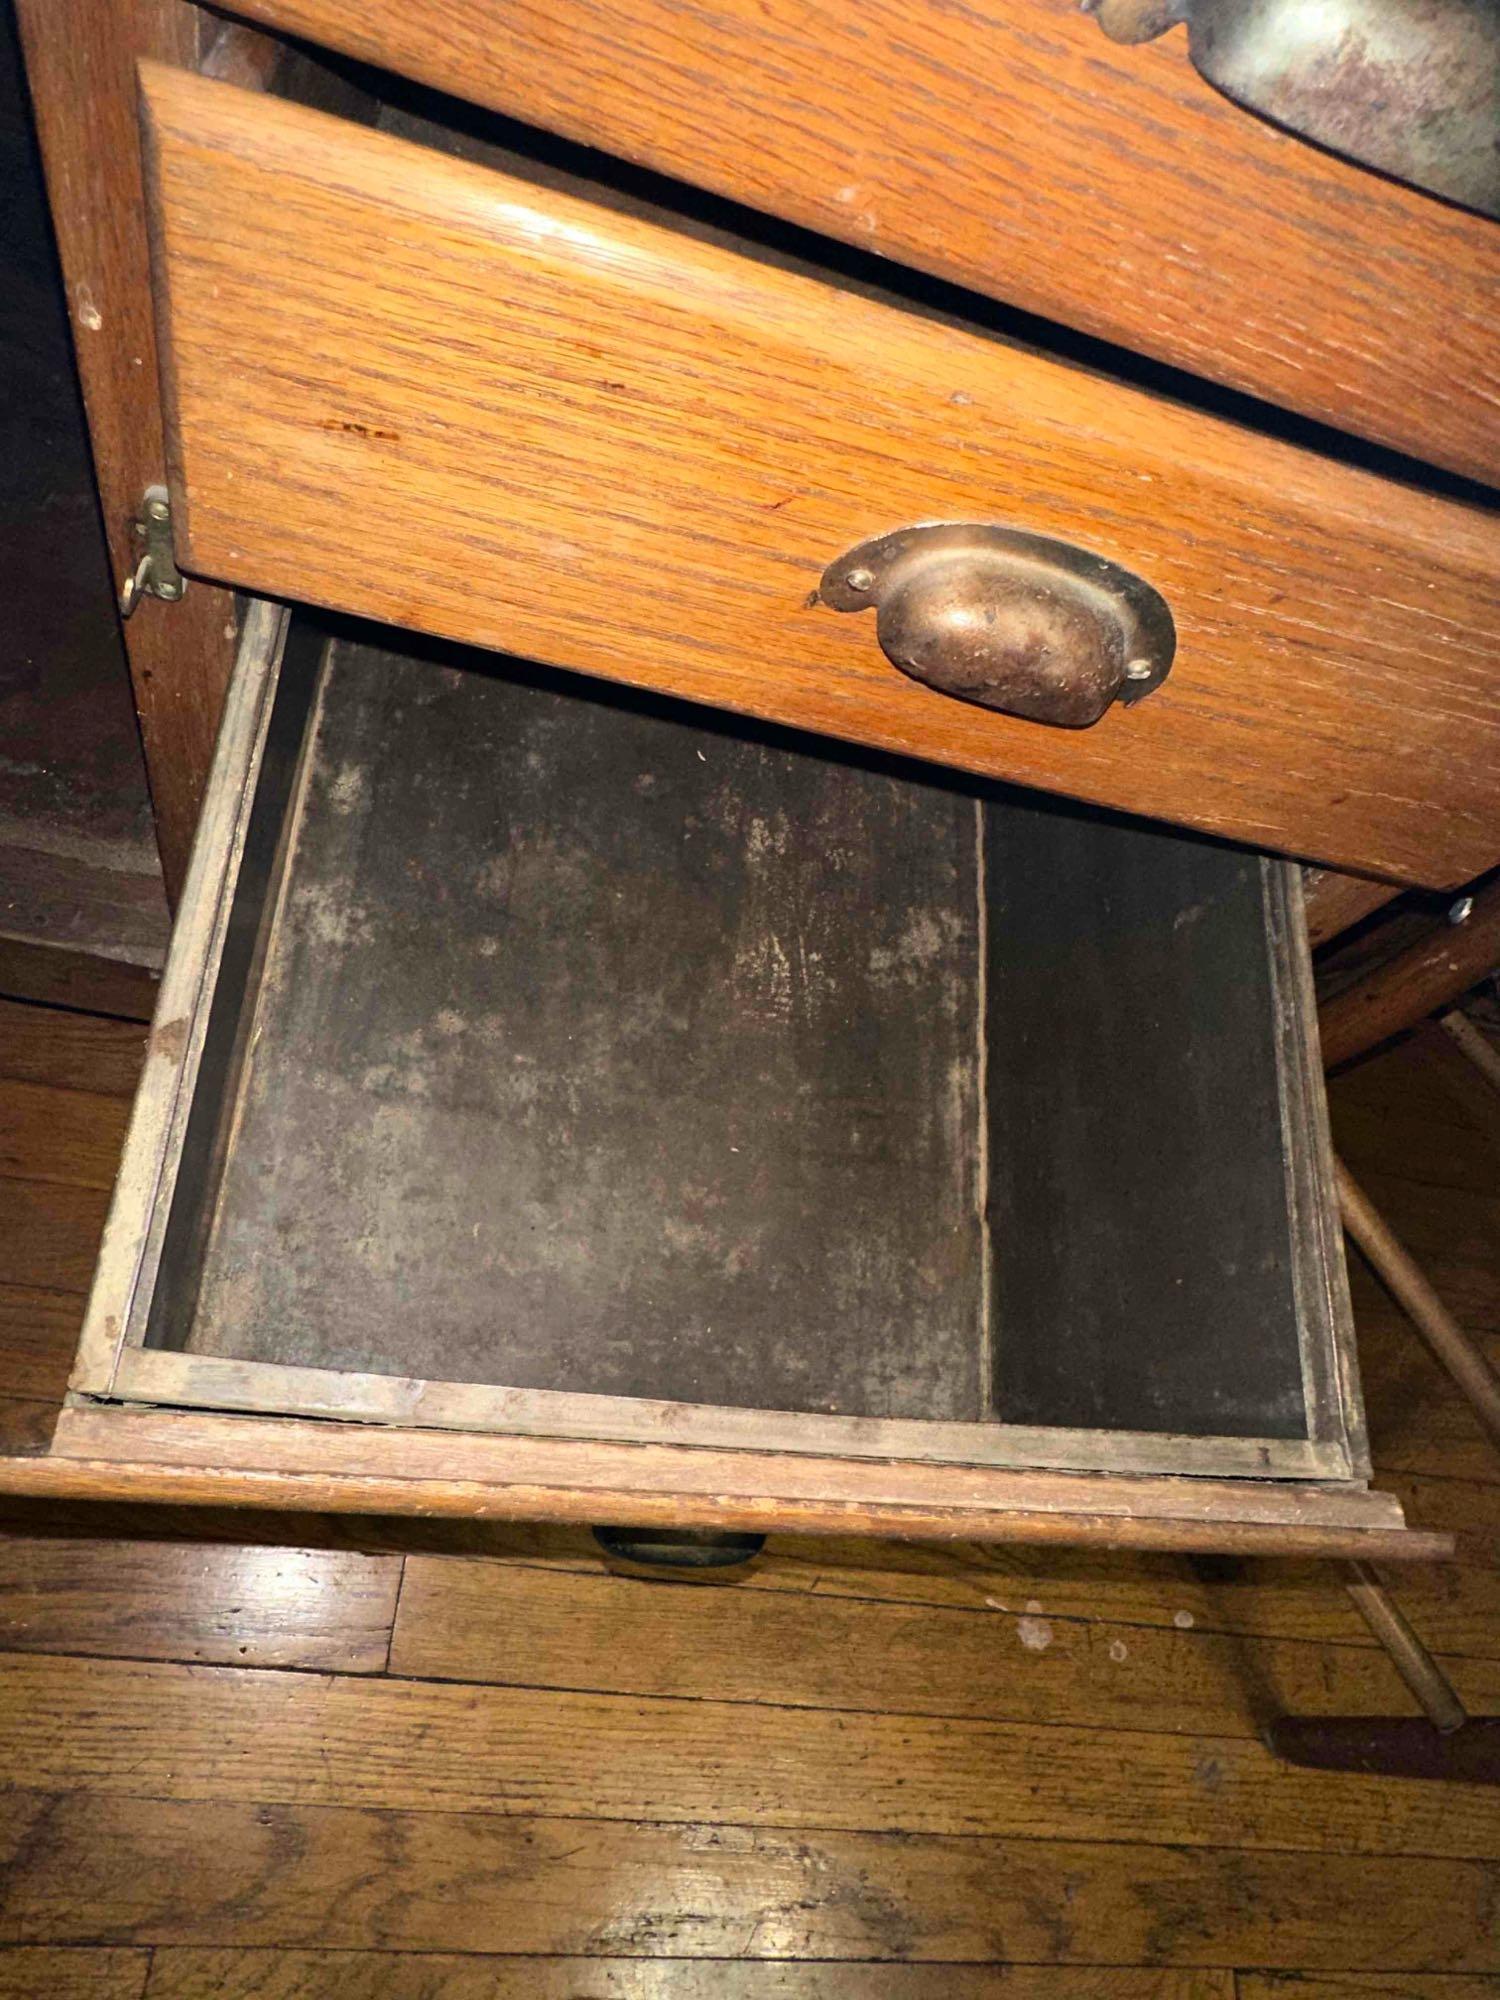 Antique Metal (wood grain) Hoosier Cabinet Roll down shelf